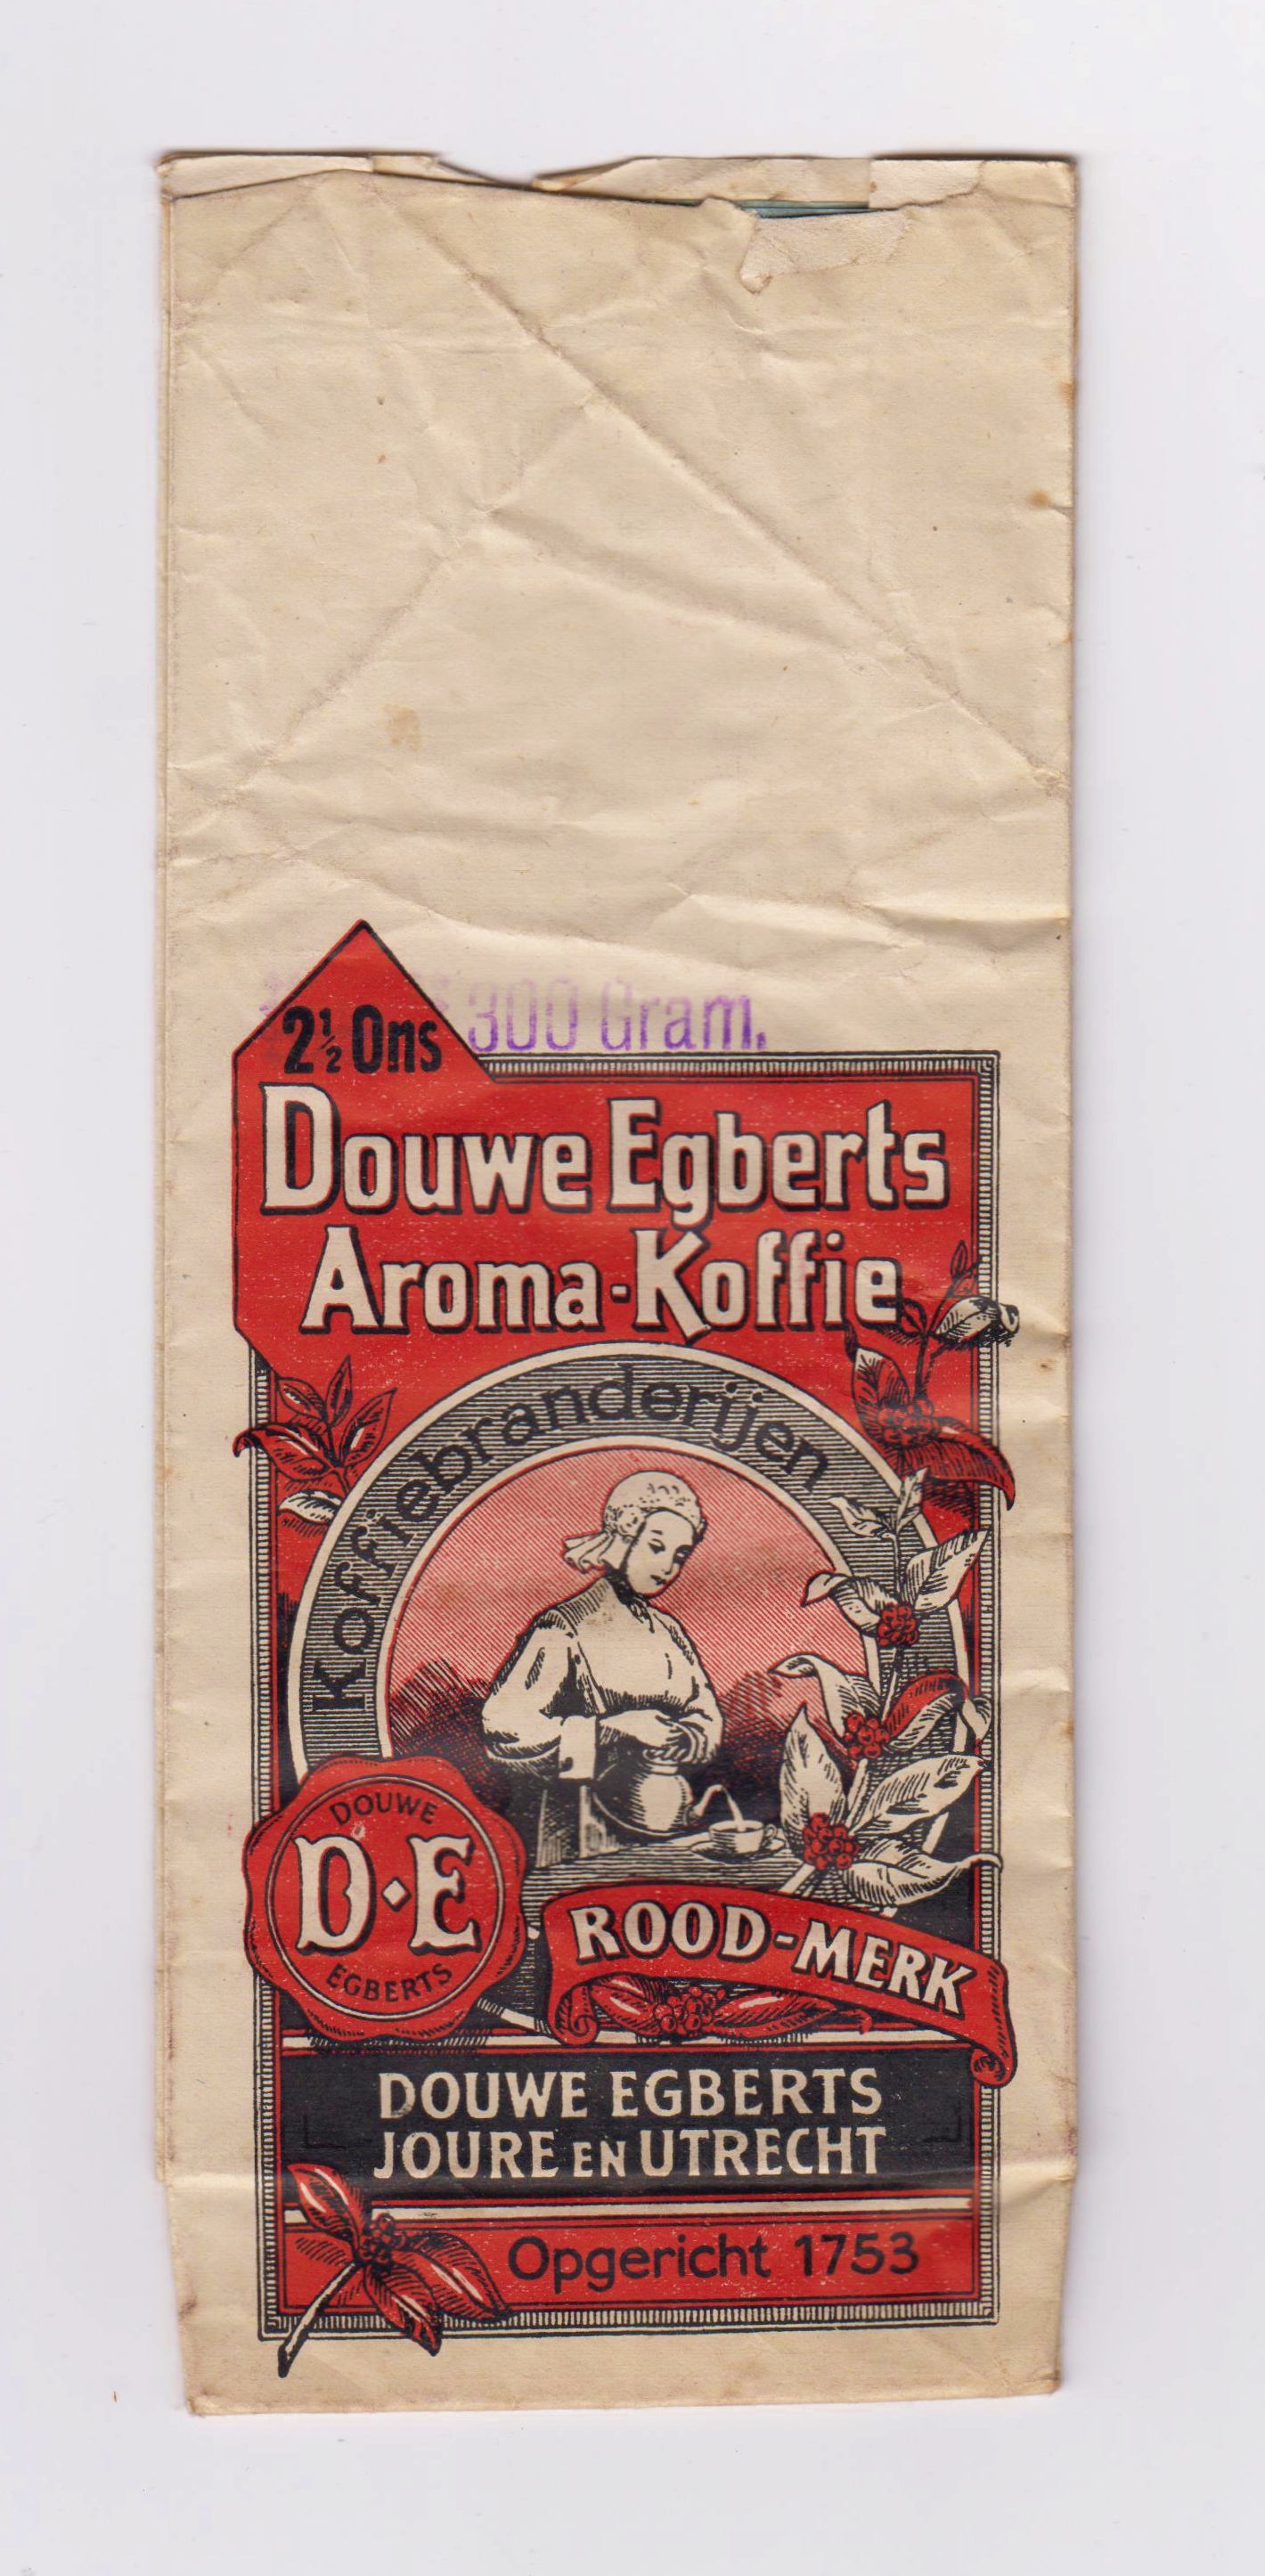 Een oude verpakking van Douwe Egberts. Collectie koffiebranderij Stroobants, Diest.